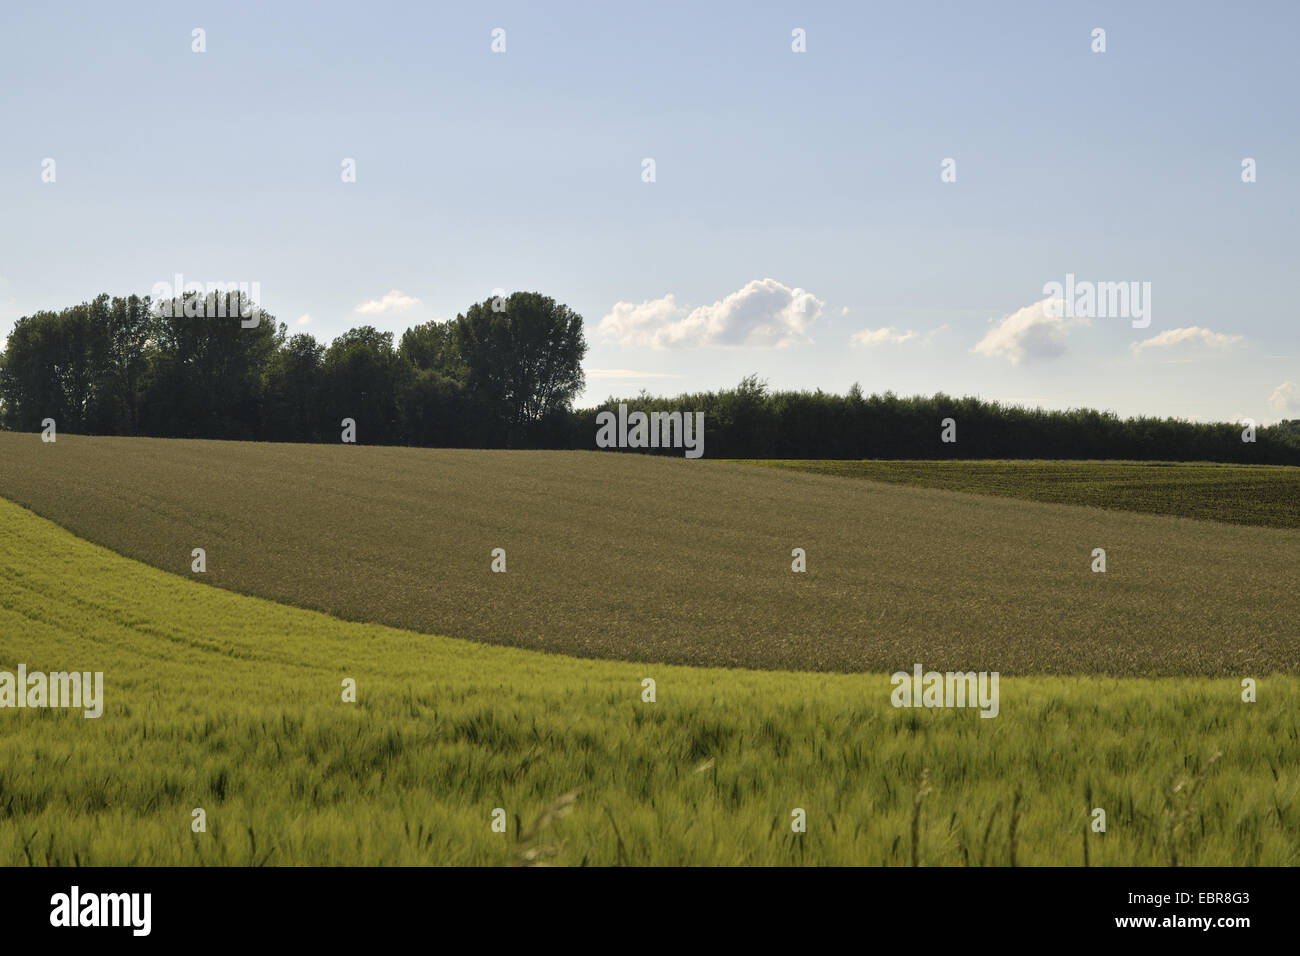 hilly field landscape Stock Photo